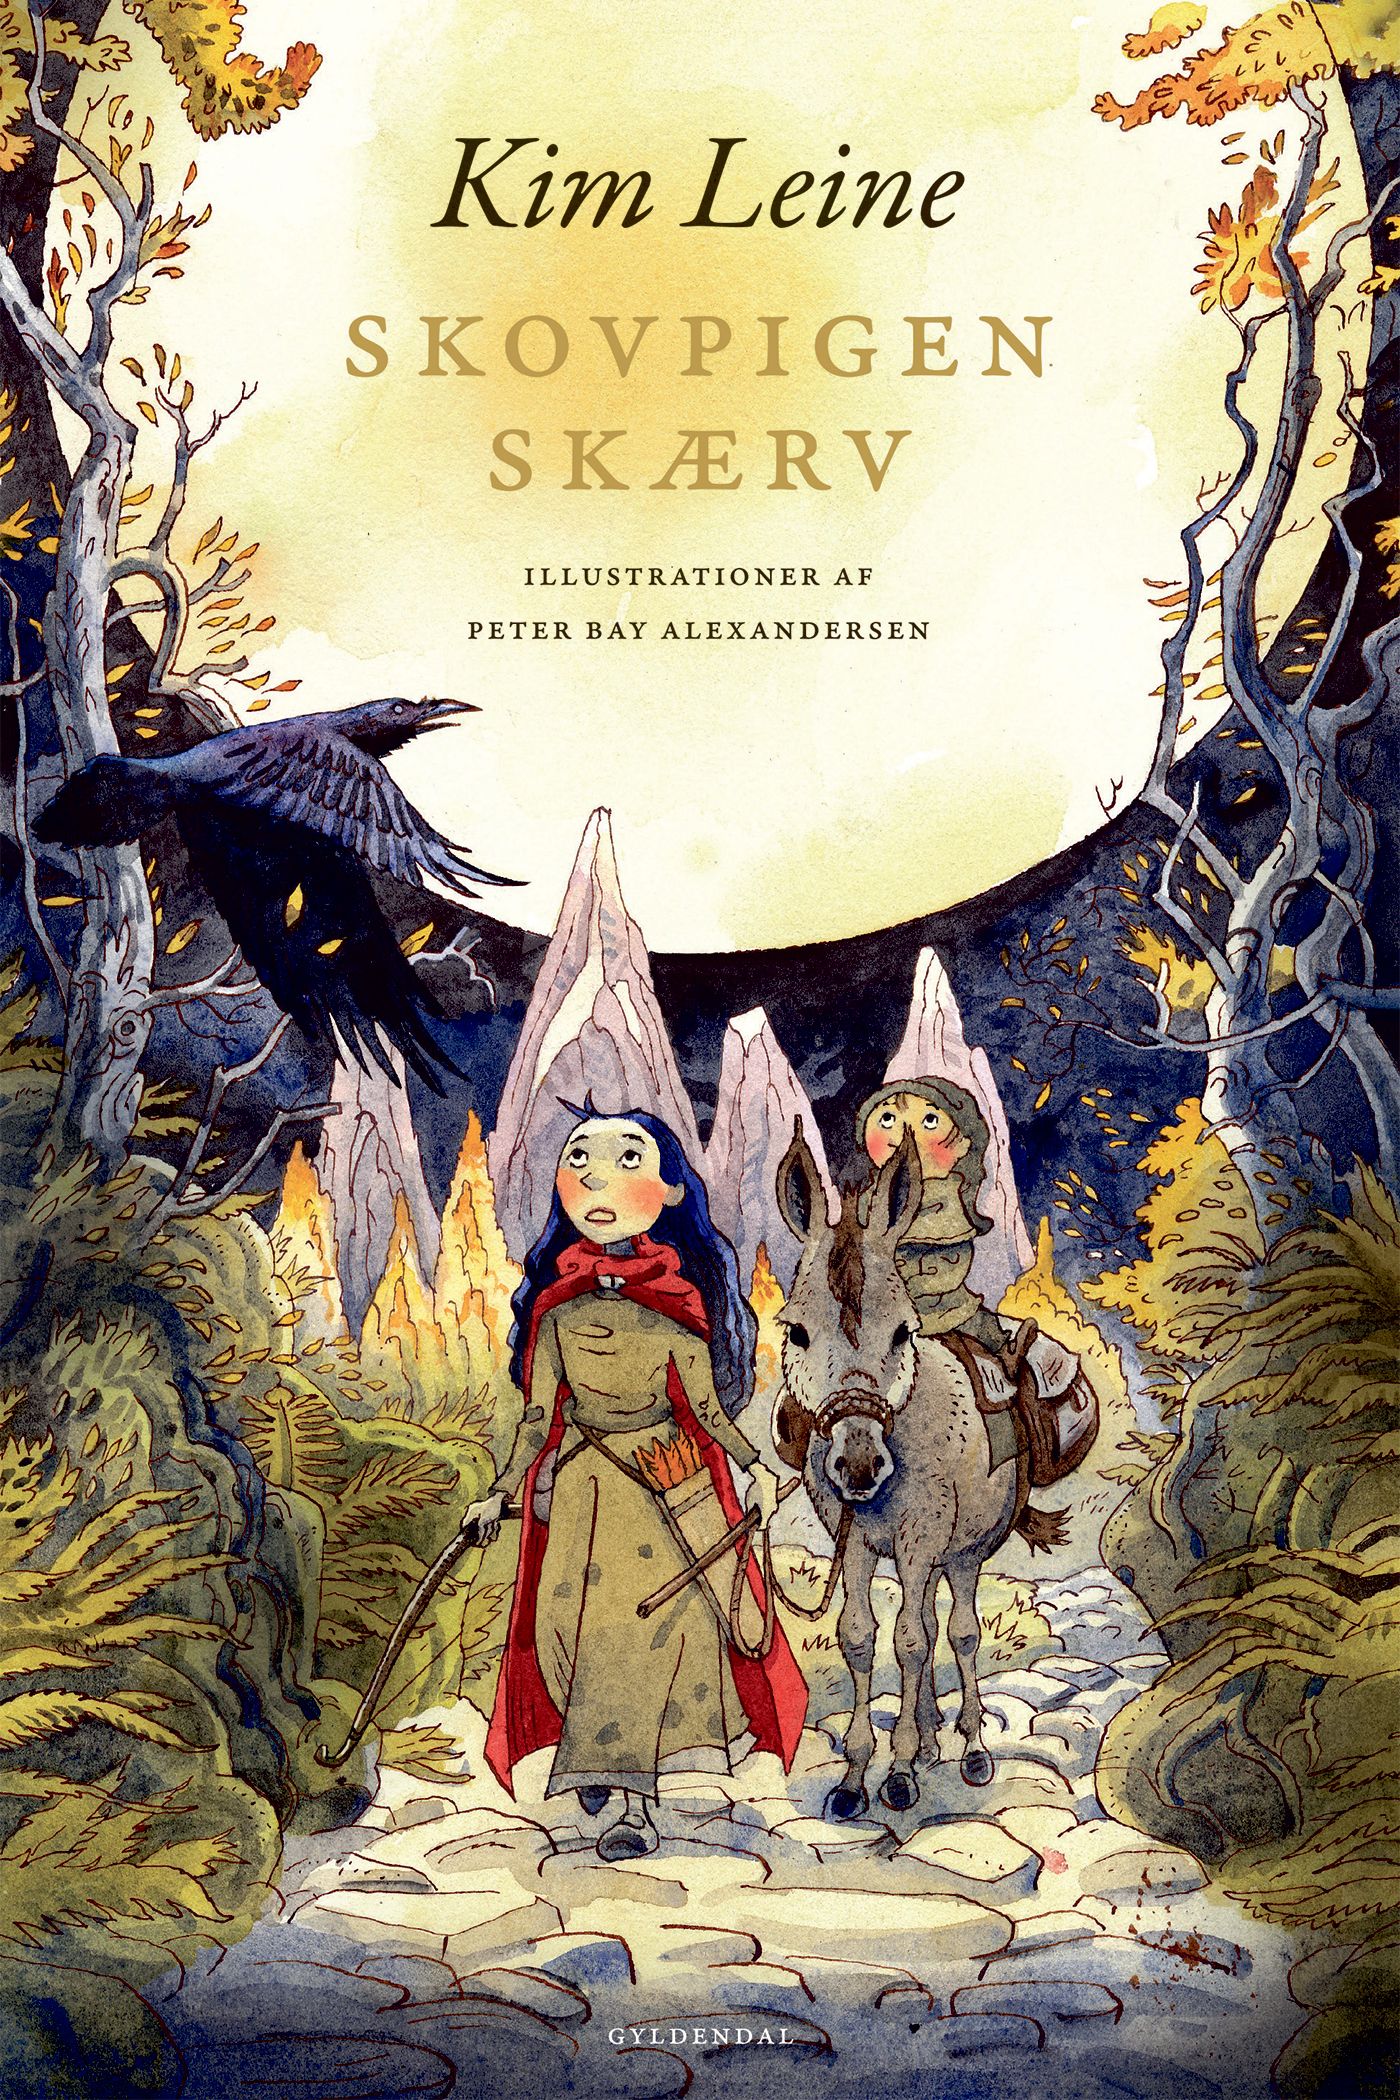 Skovpigen Skærv, e-bok av Kim Leine